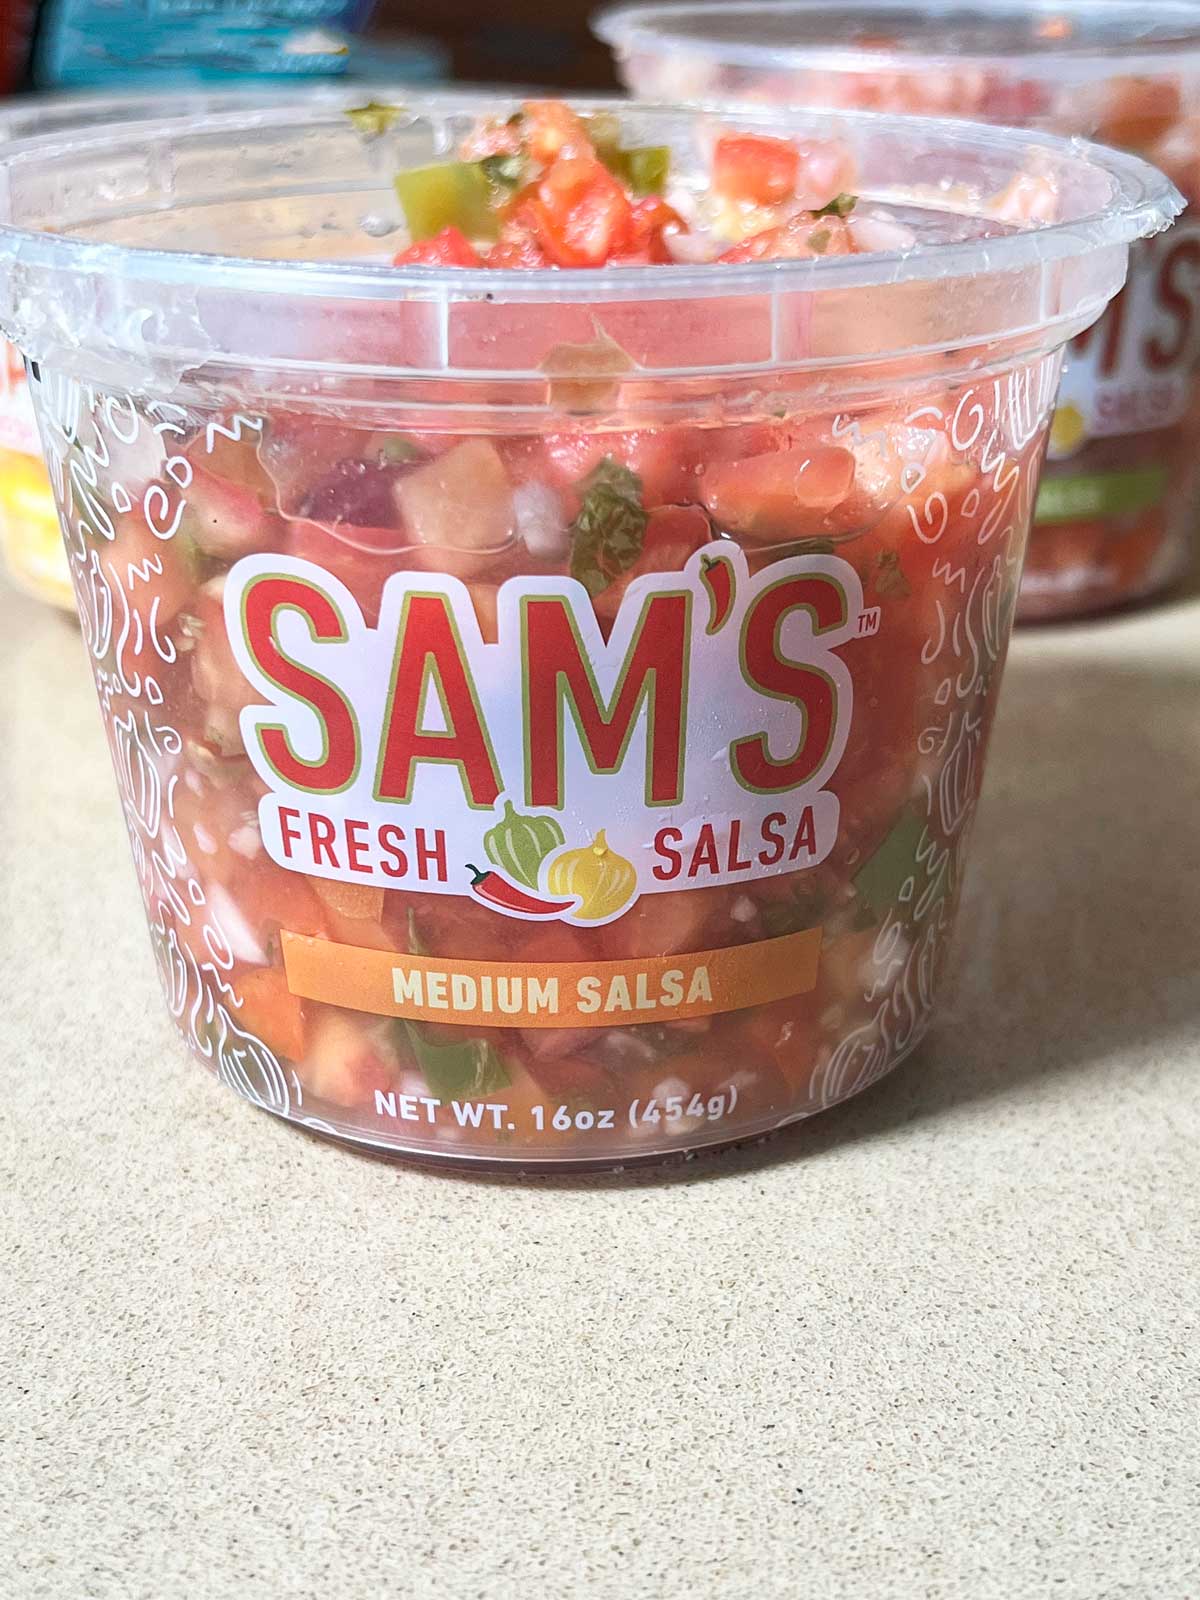 Salsa Butter Noodles Recipe. Best salsa is Sam's Salsa